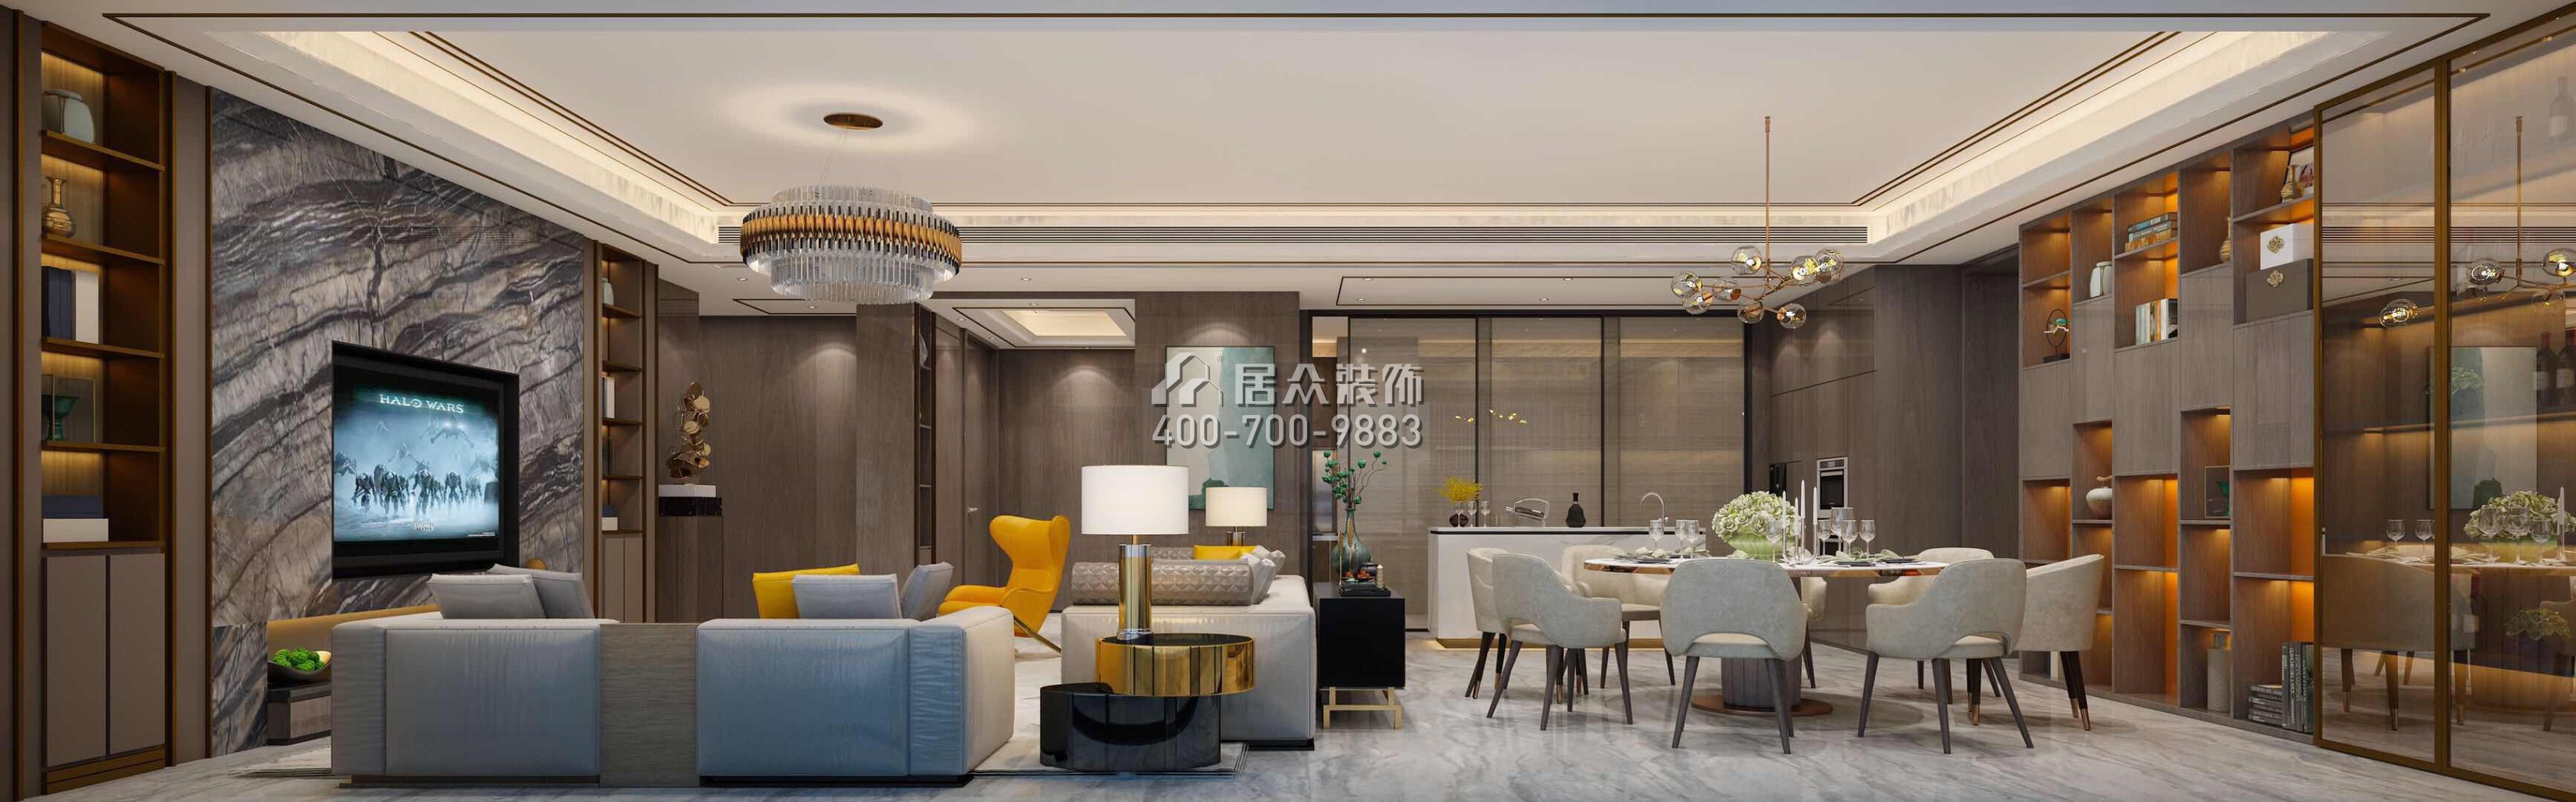 蘭江山第二期313平方米中式風格平層戶型客餐廳一體裝修效果圖